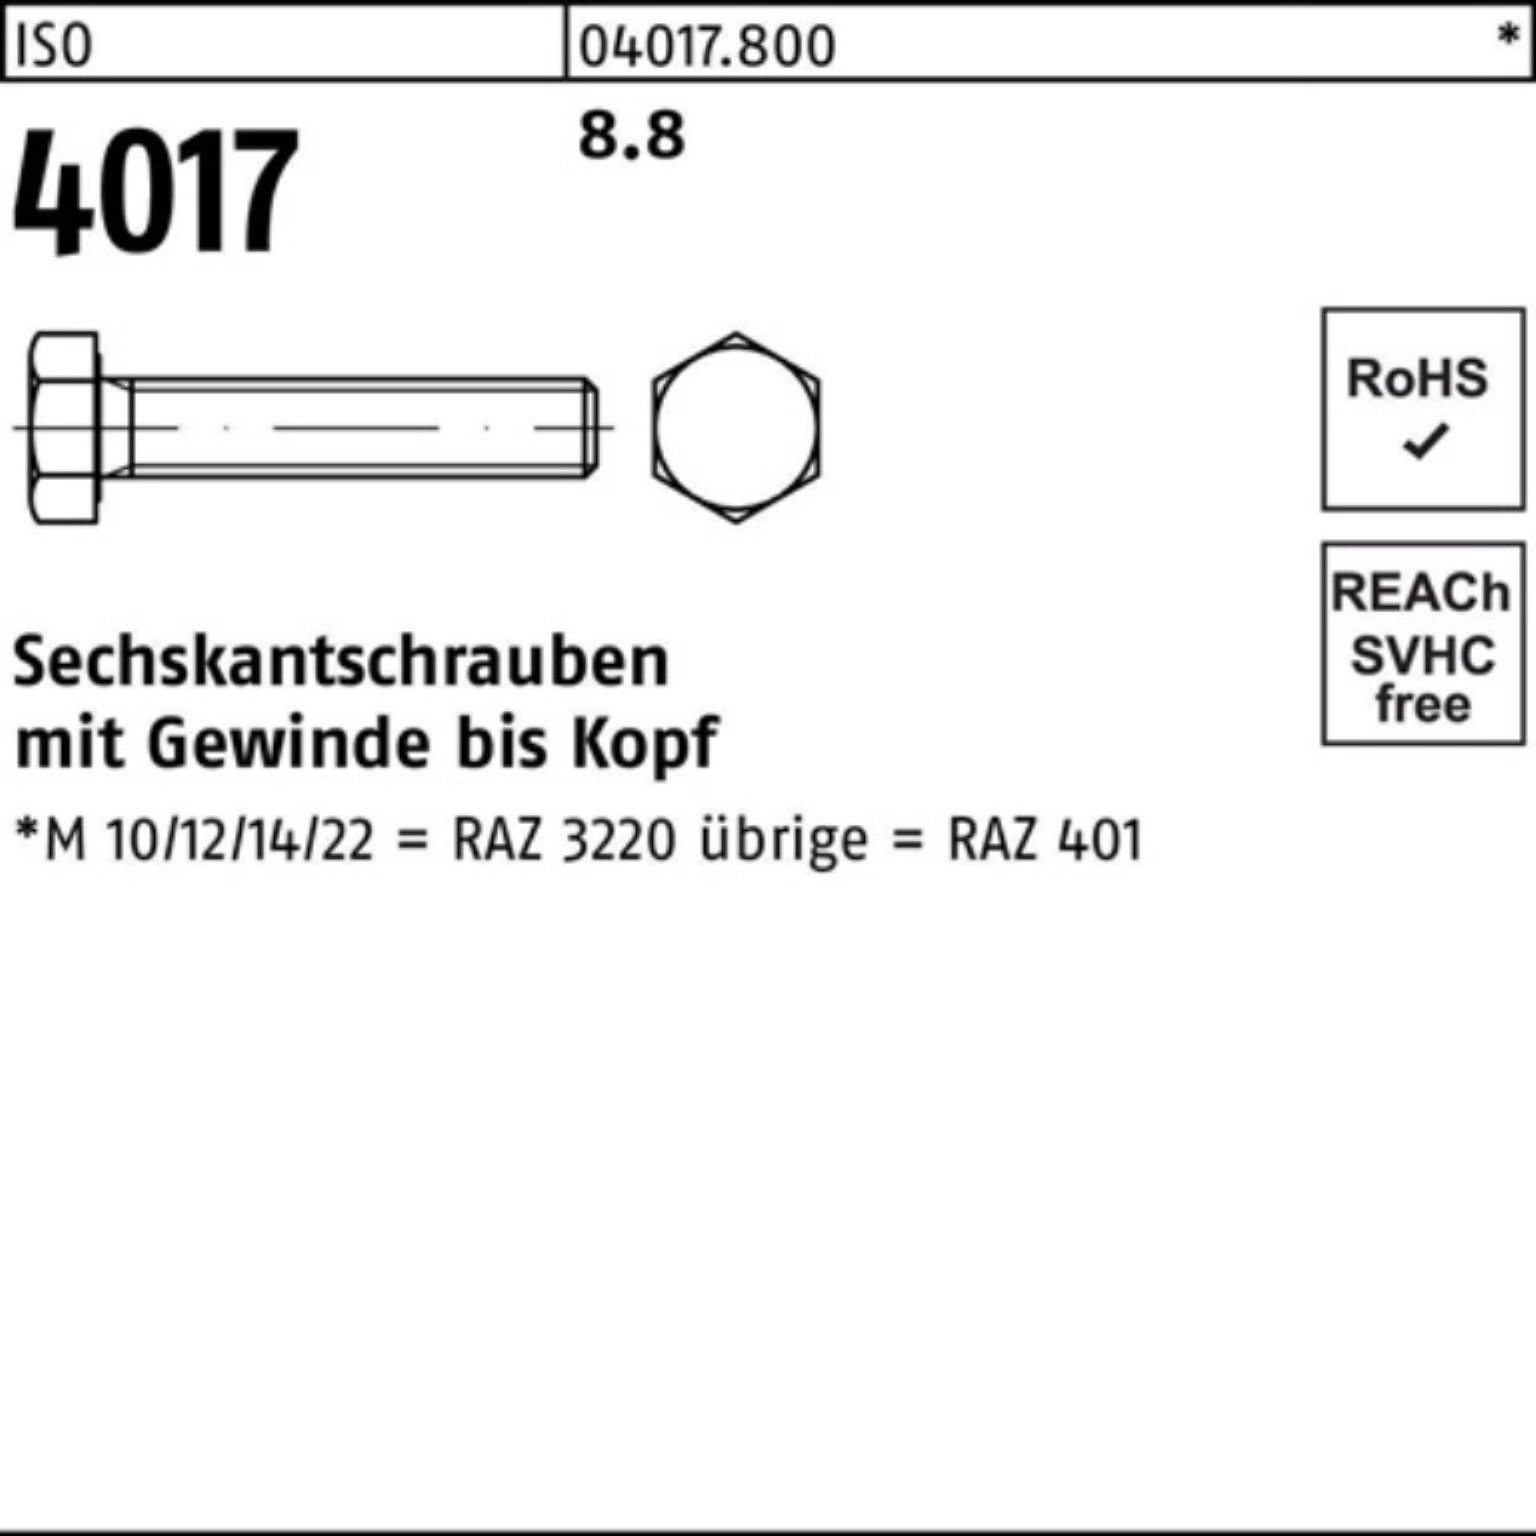 Bufab Sechskantschraube 100er ISO Pack 1 ISO 401 Stück 230 Sechskantschraube 4017 8.8 VG M30x